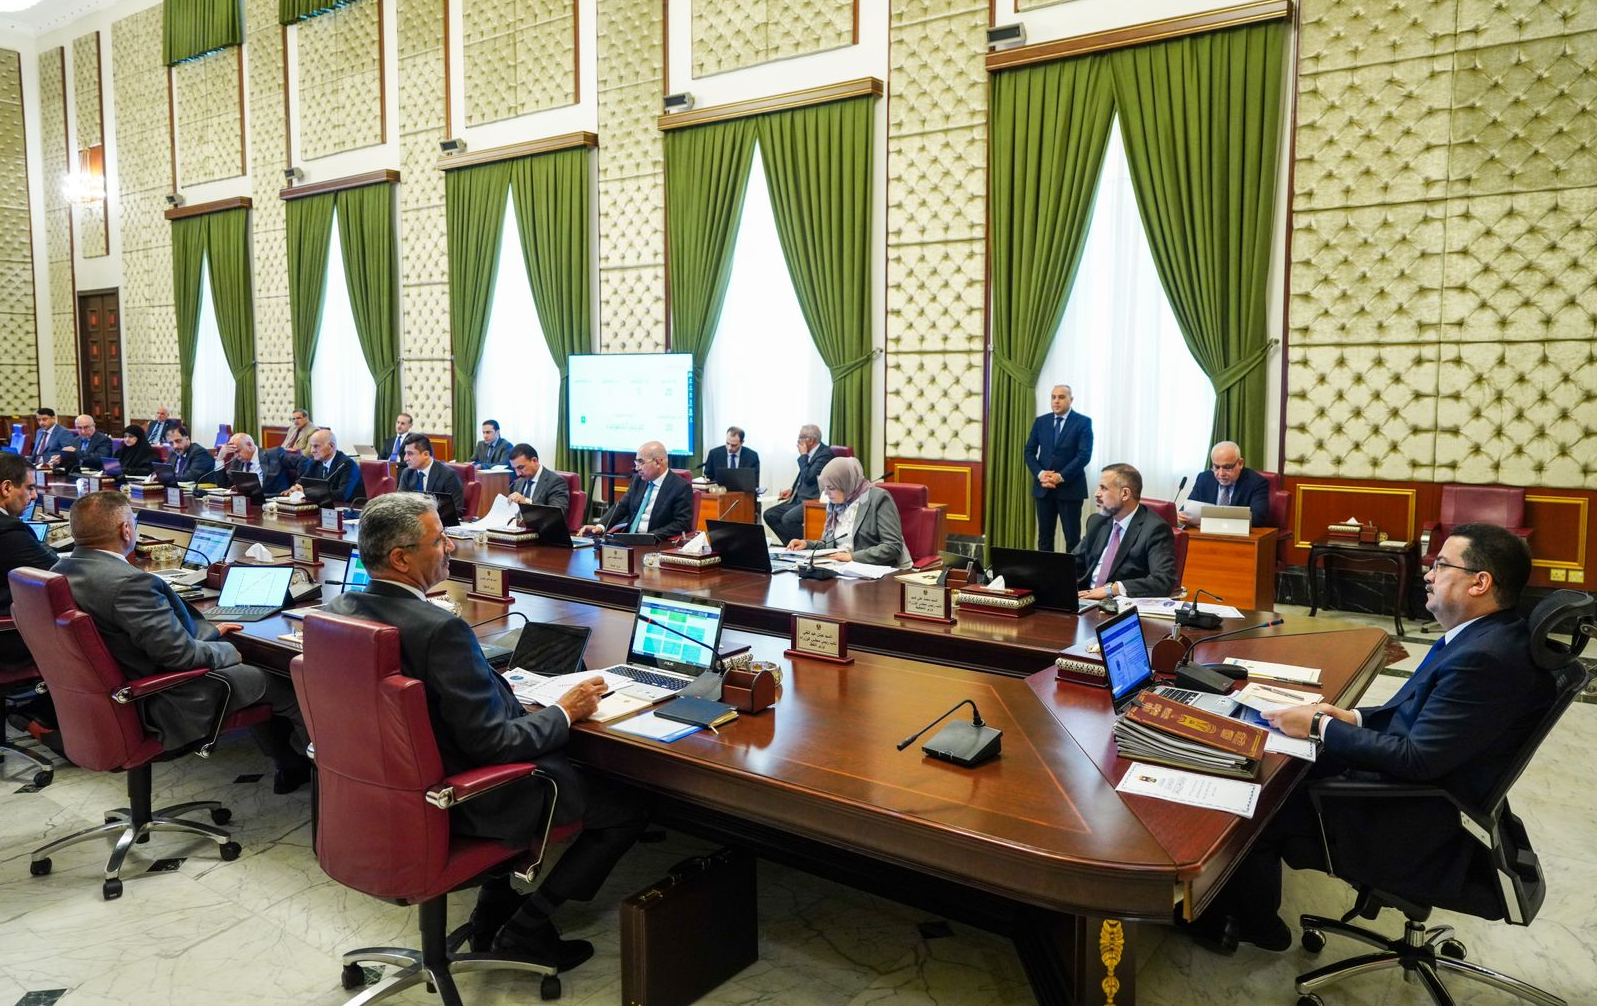 مجلس الوزراء يوصي البرلمان بسحب قانون مصادرة أموال النظام السابق وإلغاء لجنة مختصة